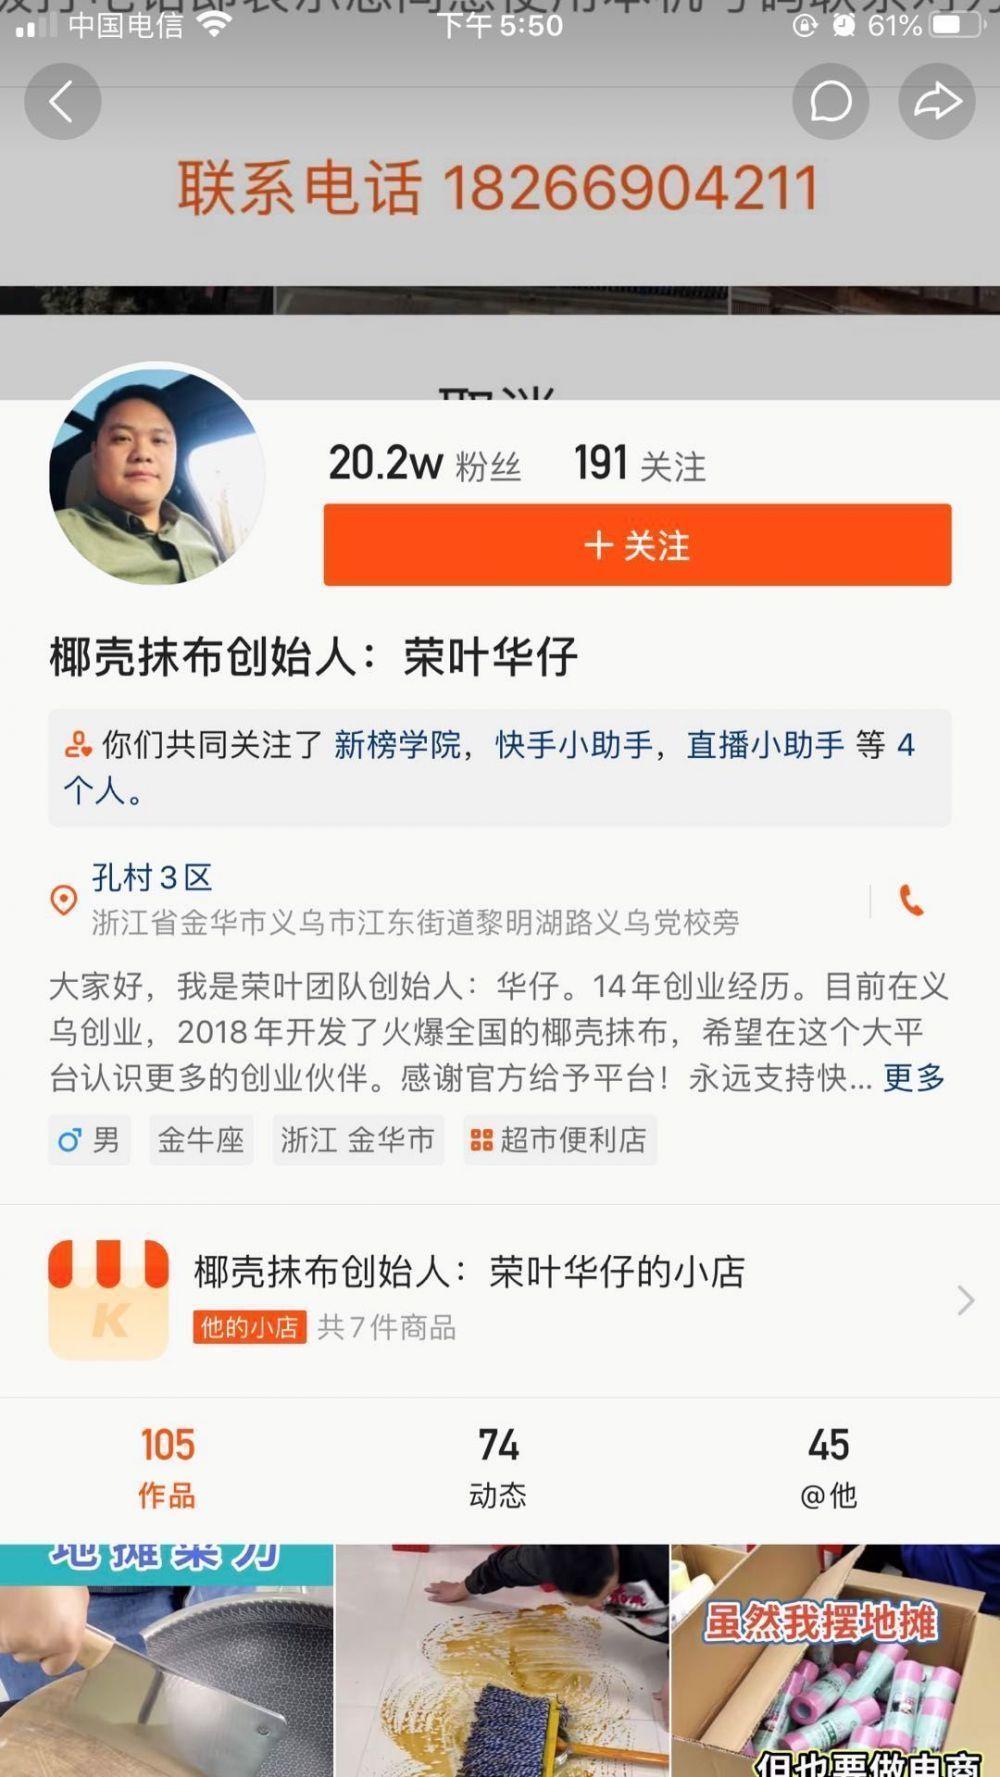 一文看懂快手的流量江湖、<a href='https://www.zhouxiaohui.cn/duanshipin/
' target='_blank'>内容运营</a>与变现模式-第7张图片-周小辉博客